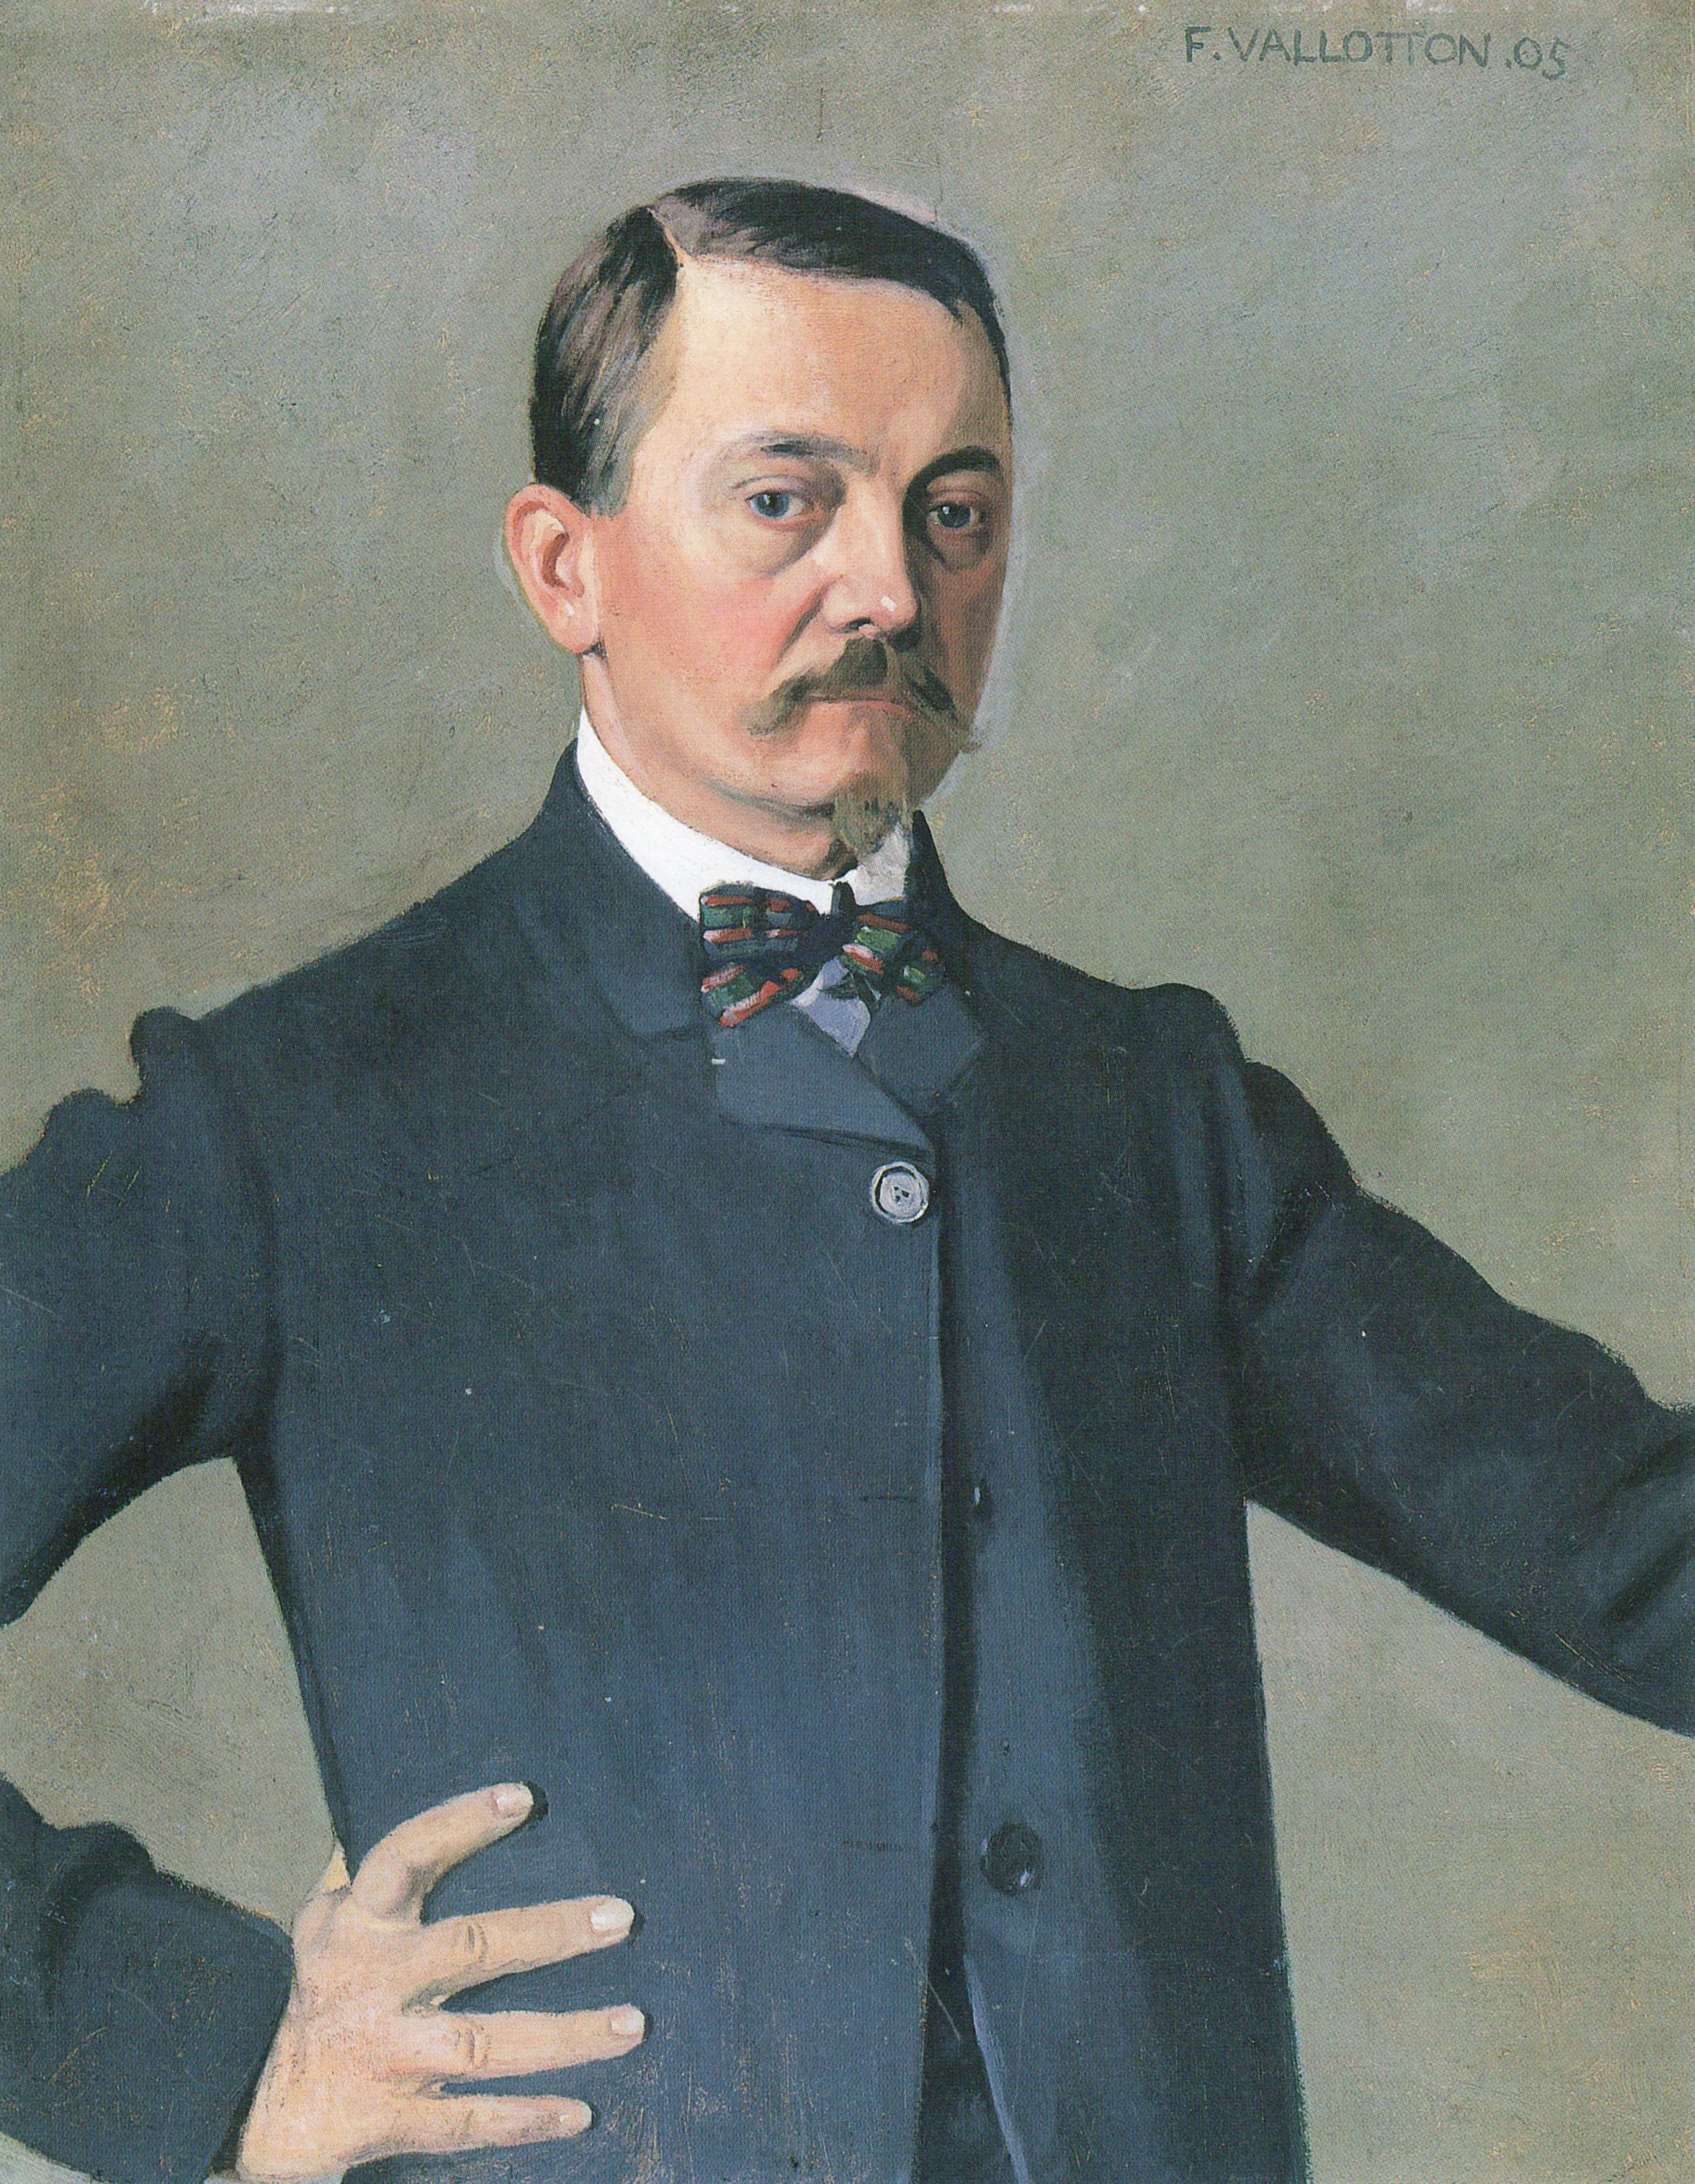 Félix Vallotton - December 28, 1865 - December 29, 1925